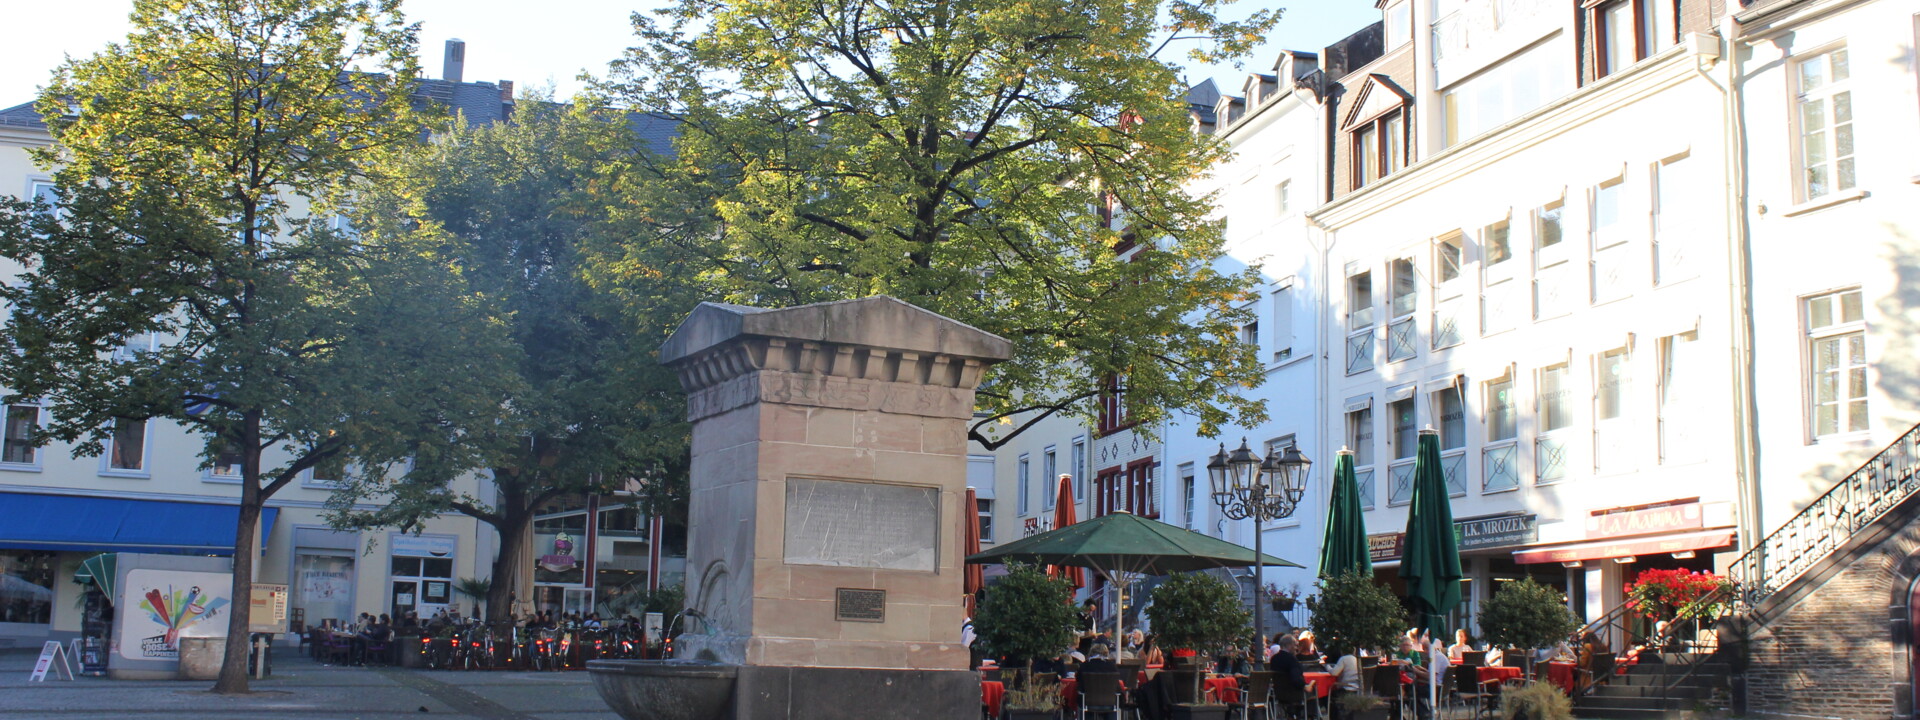 Brunnen auf dem Platz "Am Plan" in Koblenz mit Cafés und Bäumen im Hintergrund ©Koblenz-Touristik GmbH